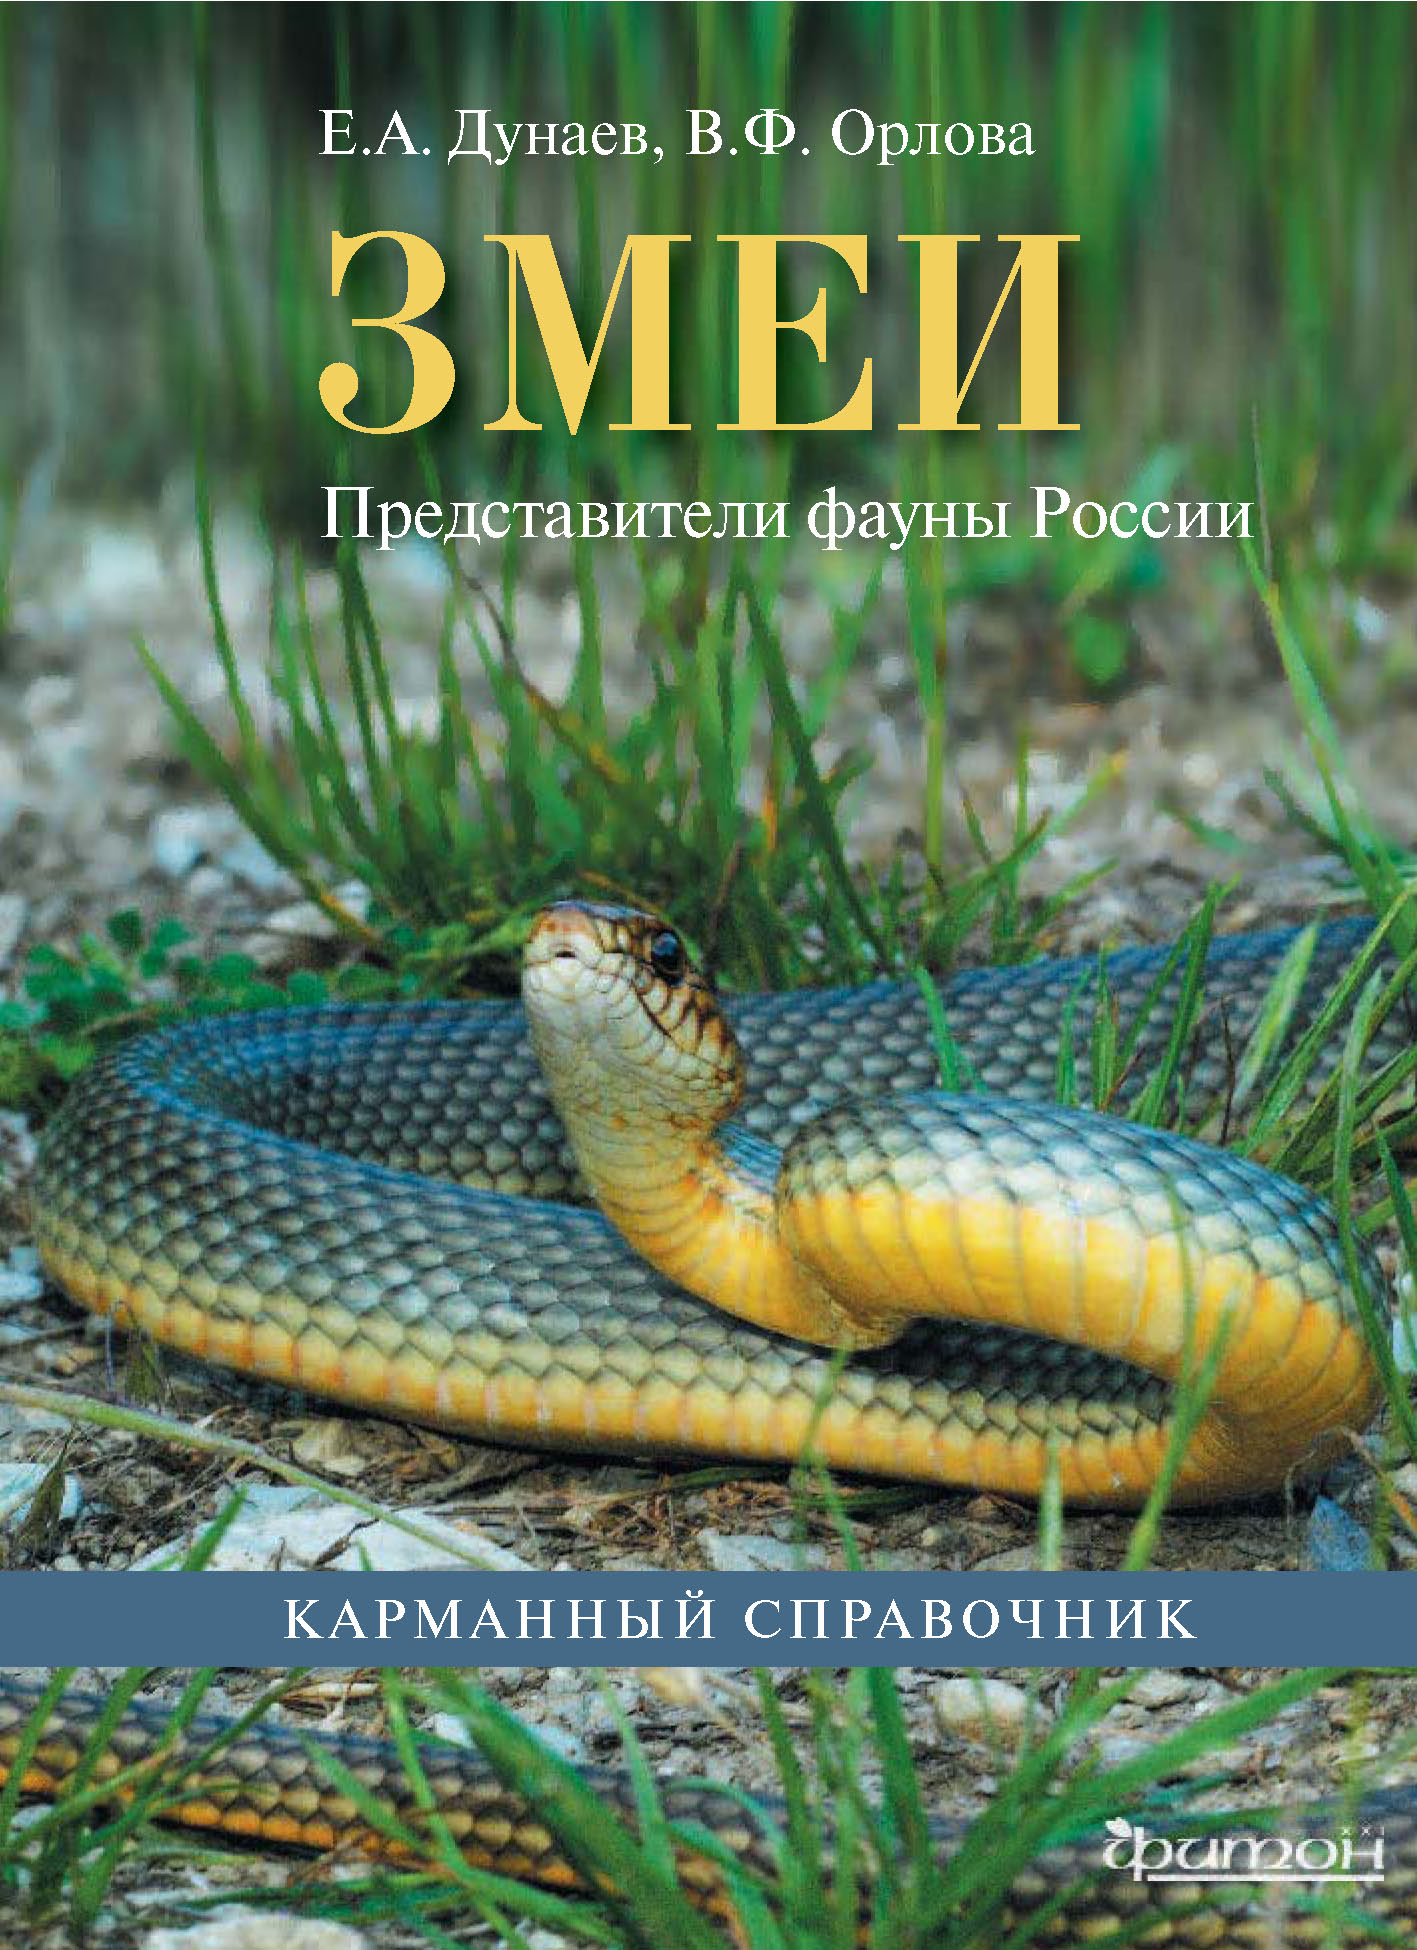 Книга про змей